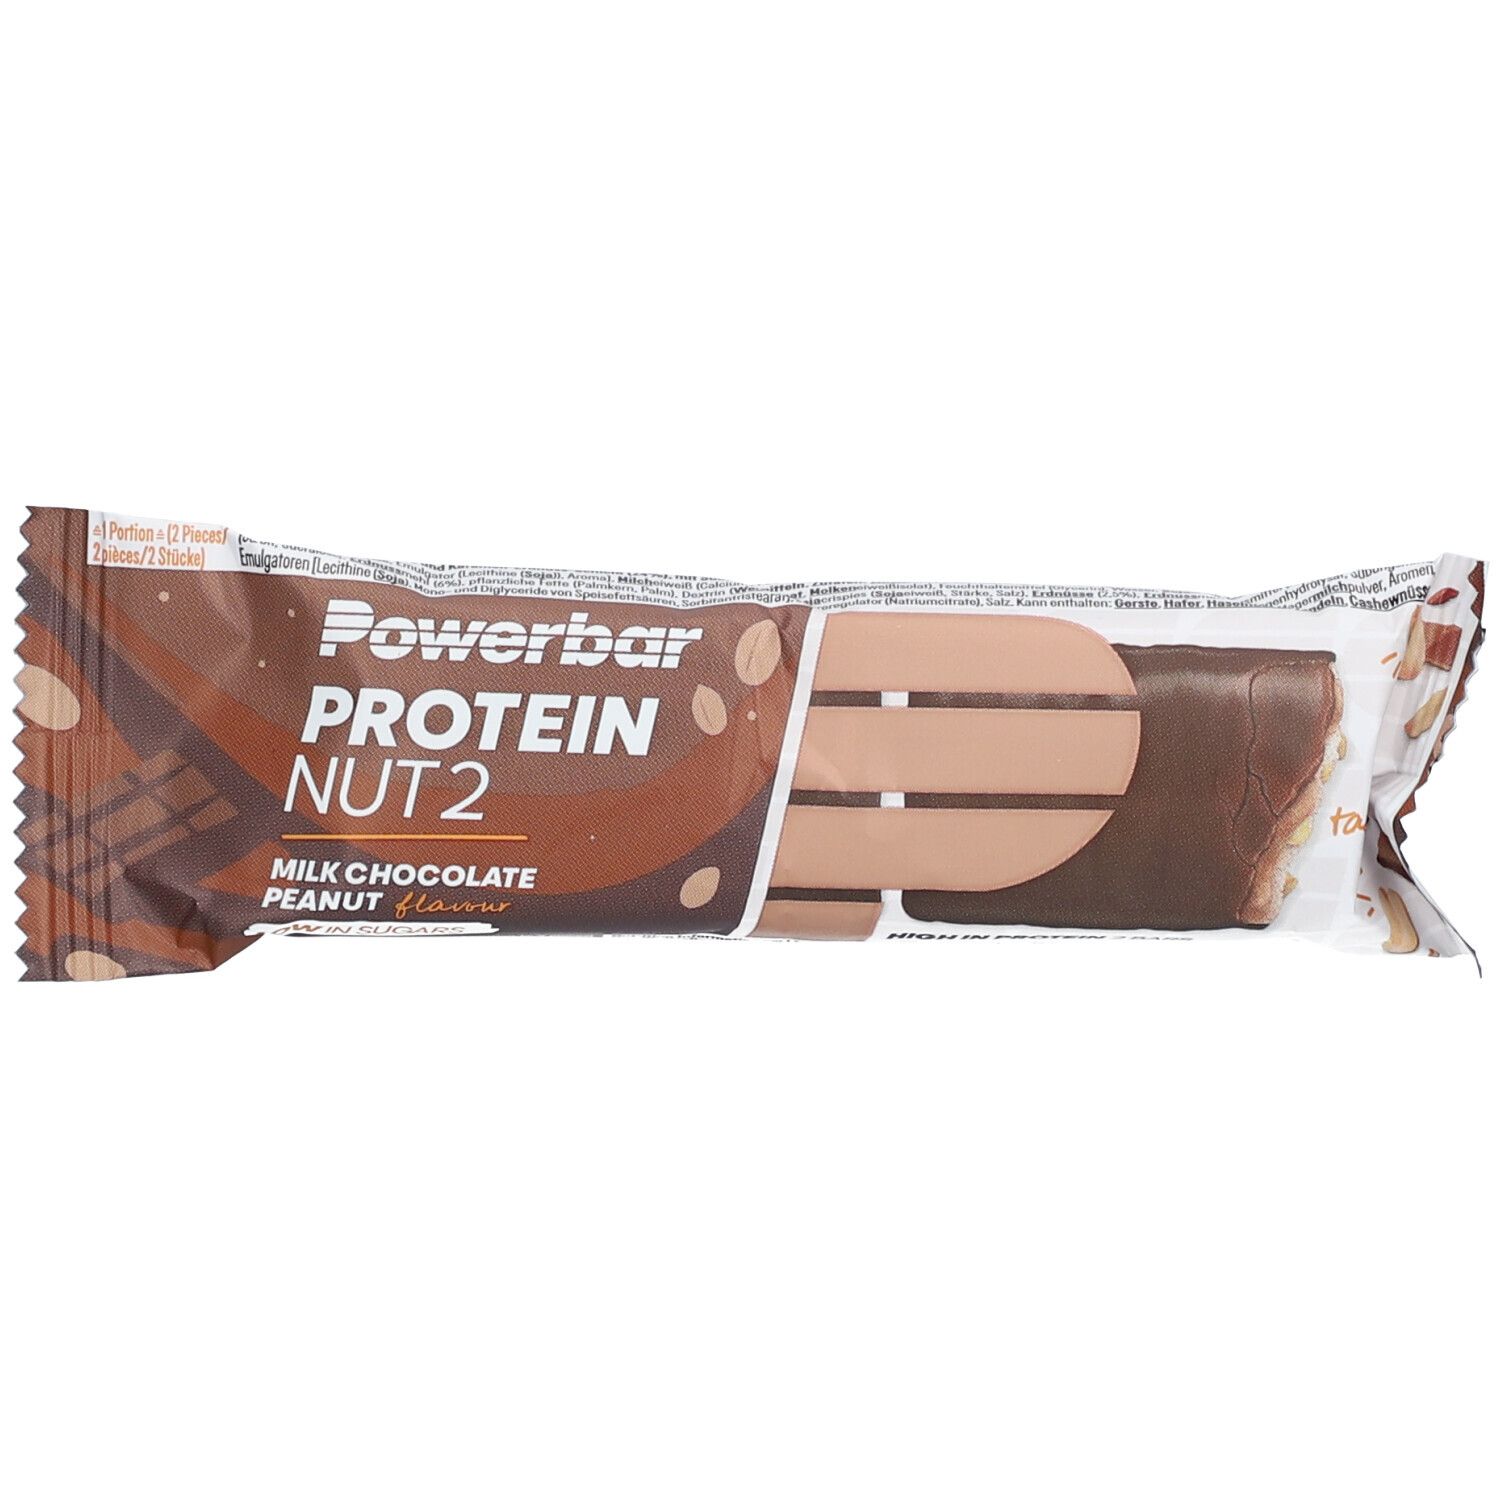 Powerbar® Protein Nut2 Milk Chocolate Peanut